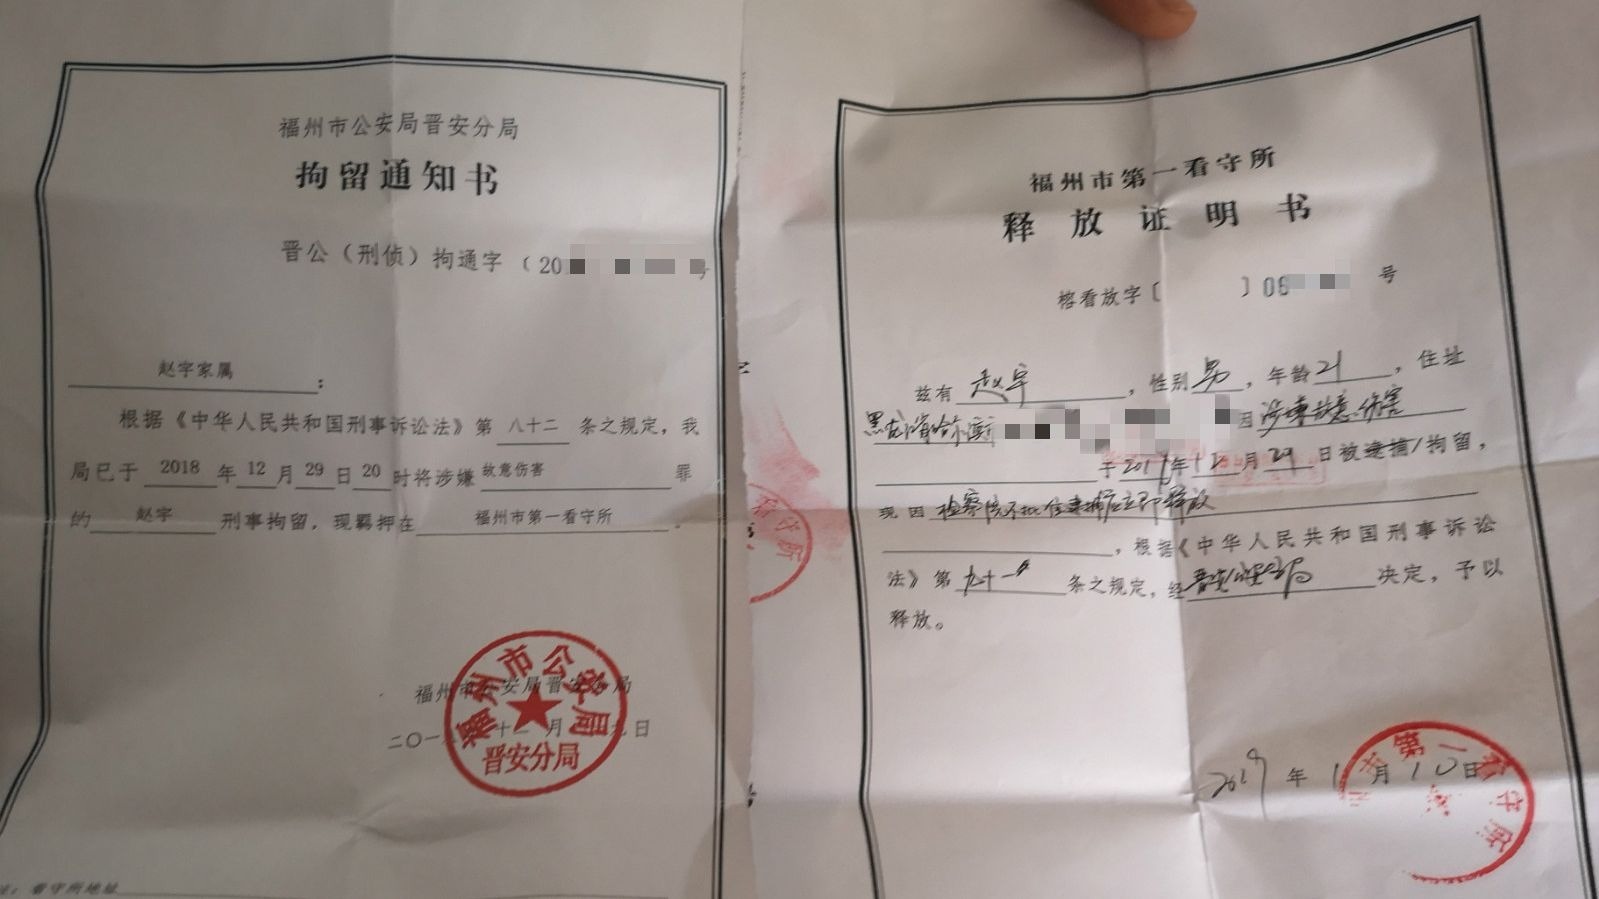 福州男子制止侵害被刑拘14天 当地警方:正调查